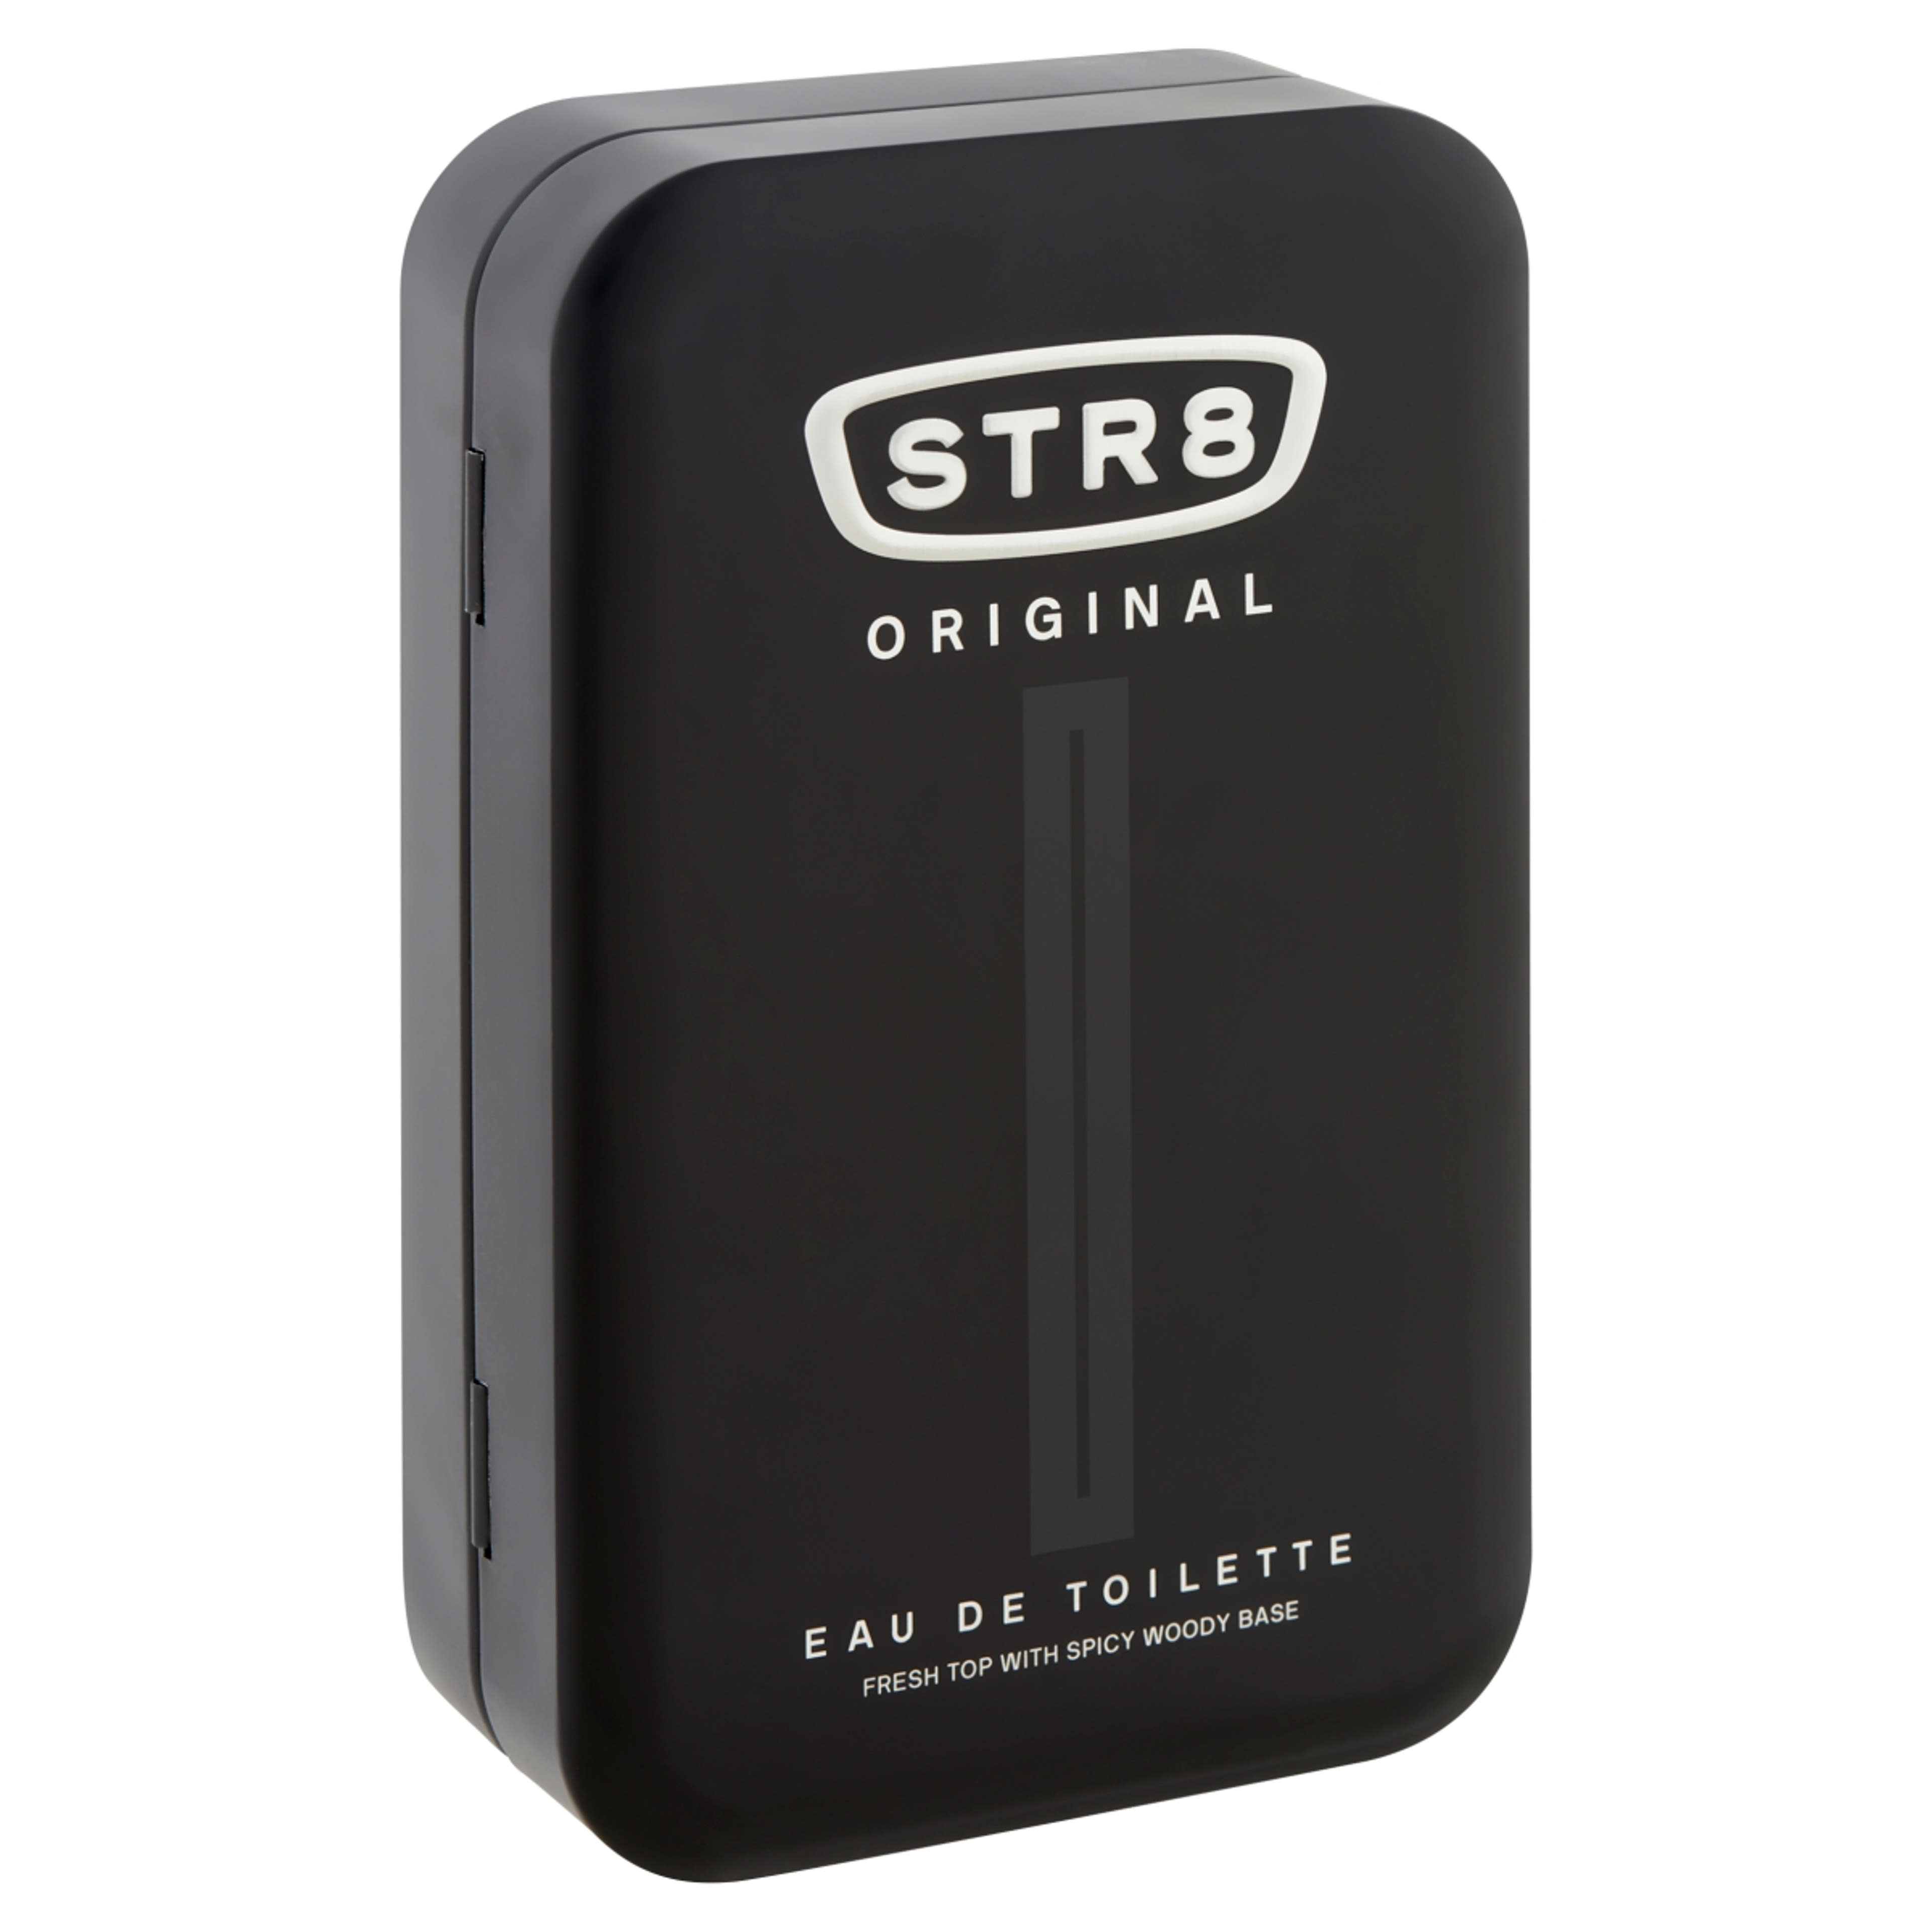 STR8 Original eau de toilette - 100 ml-3